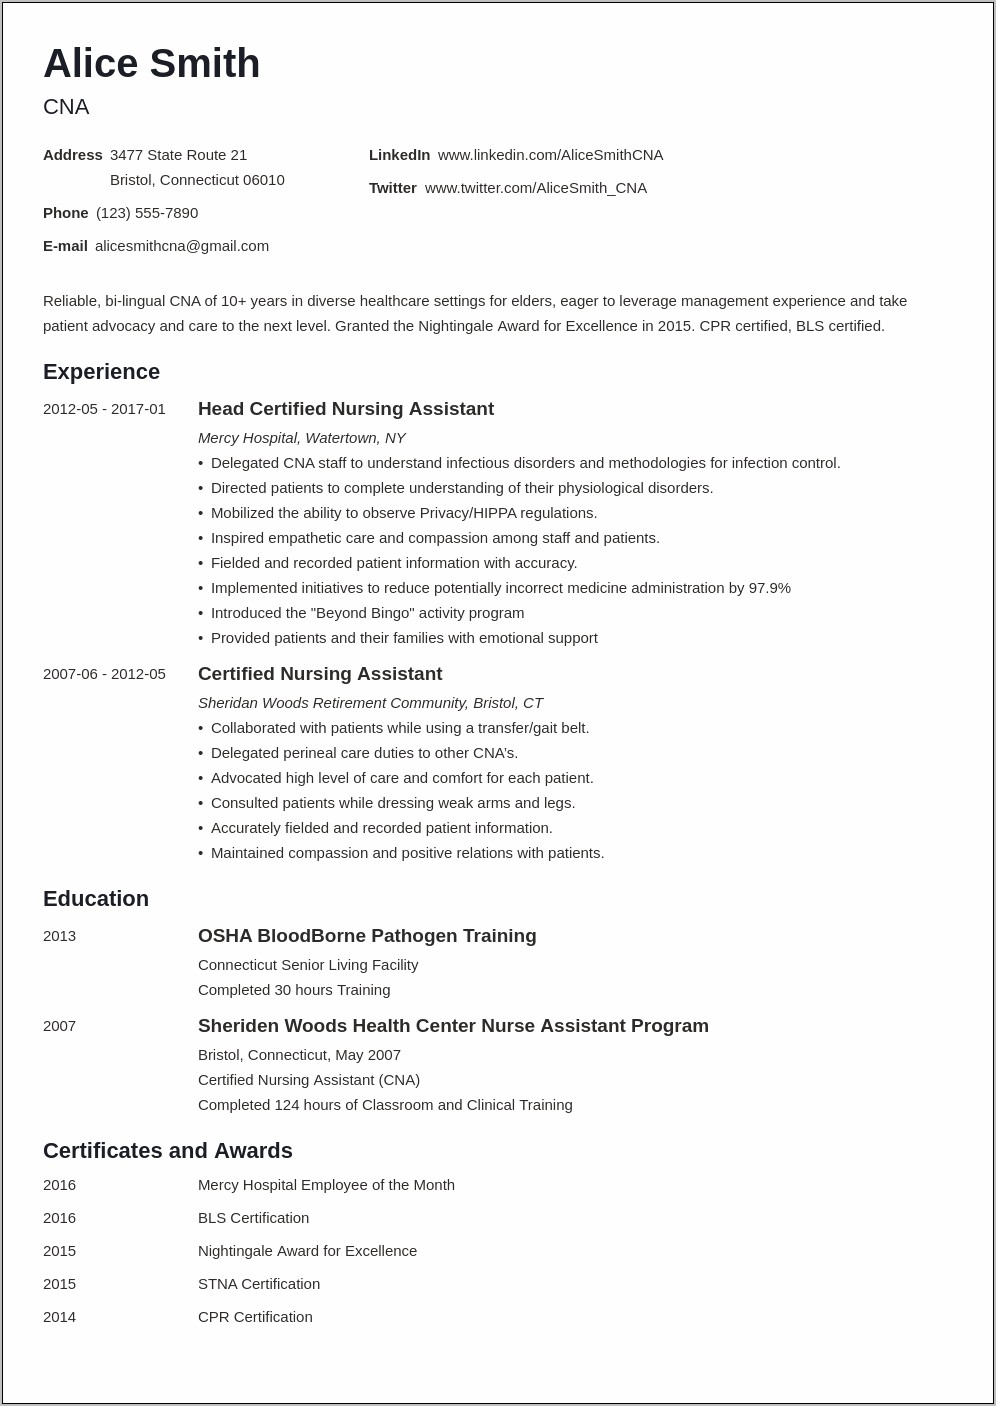 Job Description Of Certified Nursing Assistant On Resume